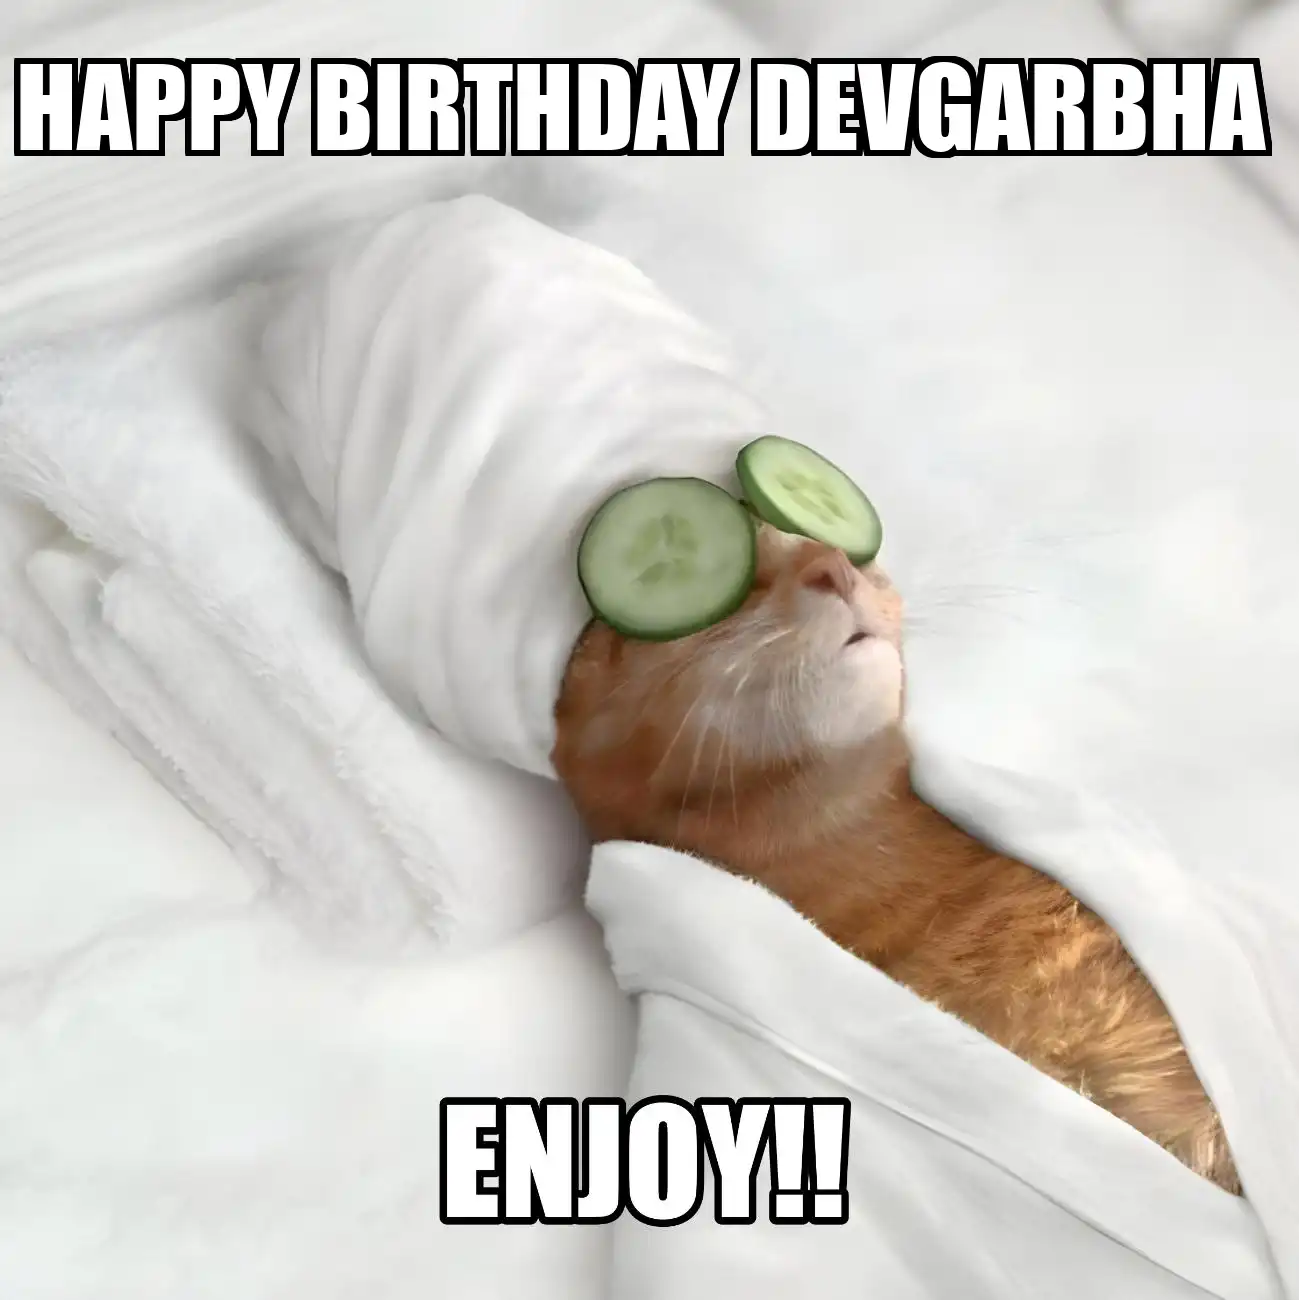 Happy Birthday Devgarbha Enjoy Cat Meme